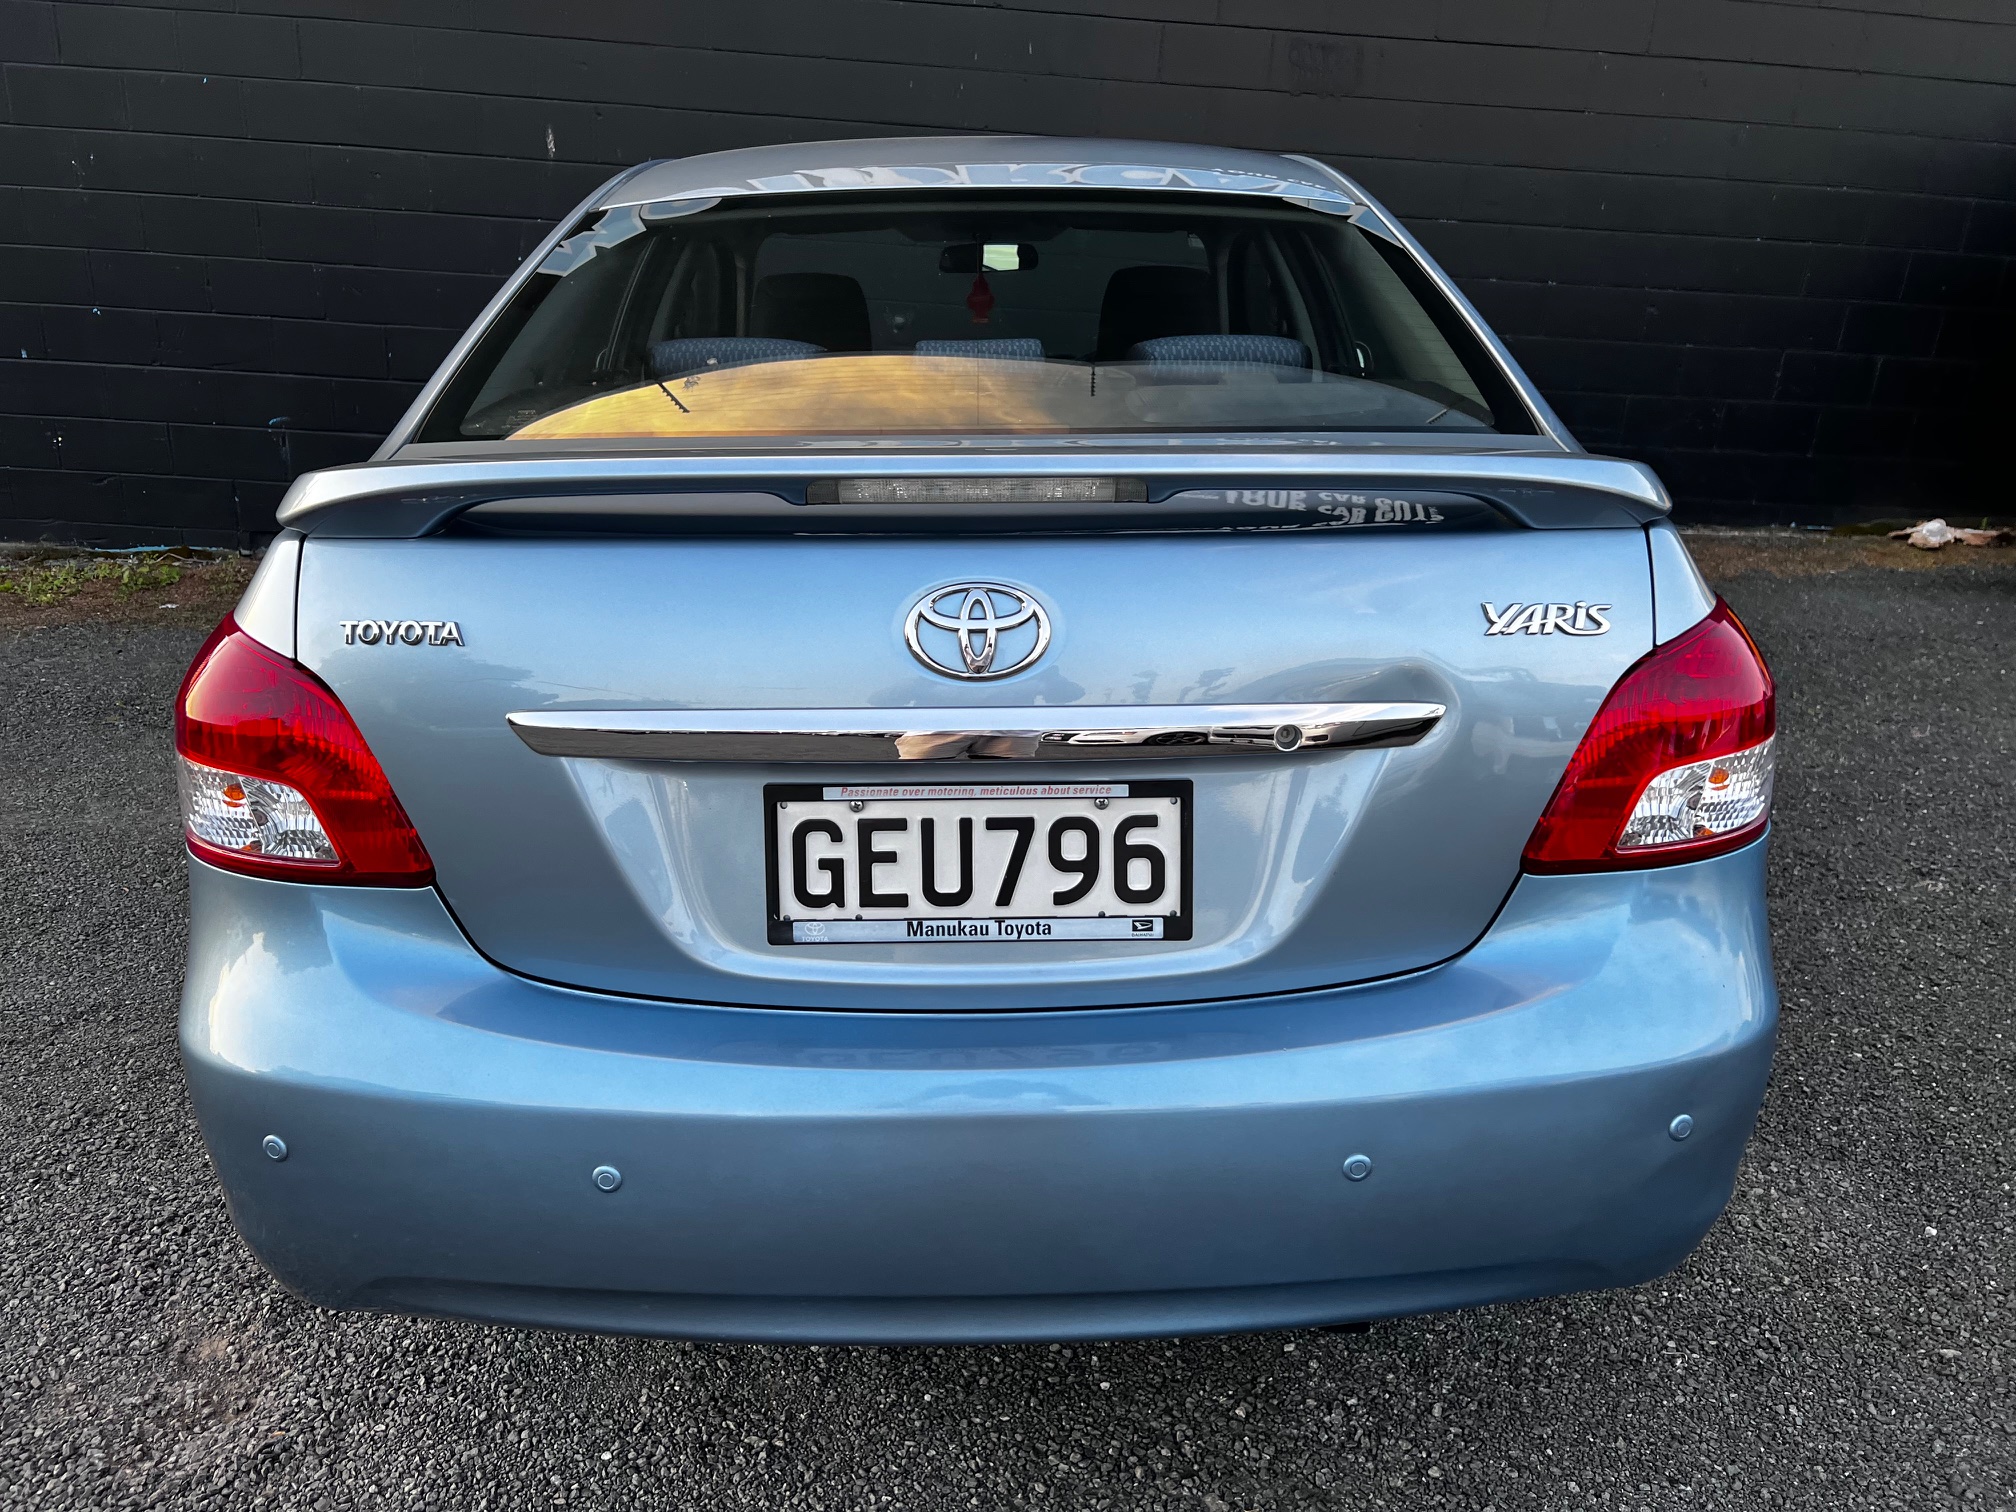 Toyota Yaris 2012 Image 4